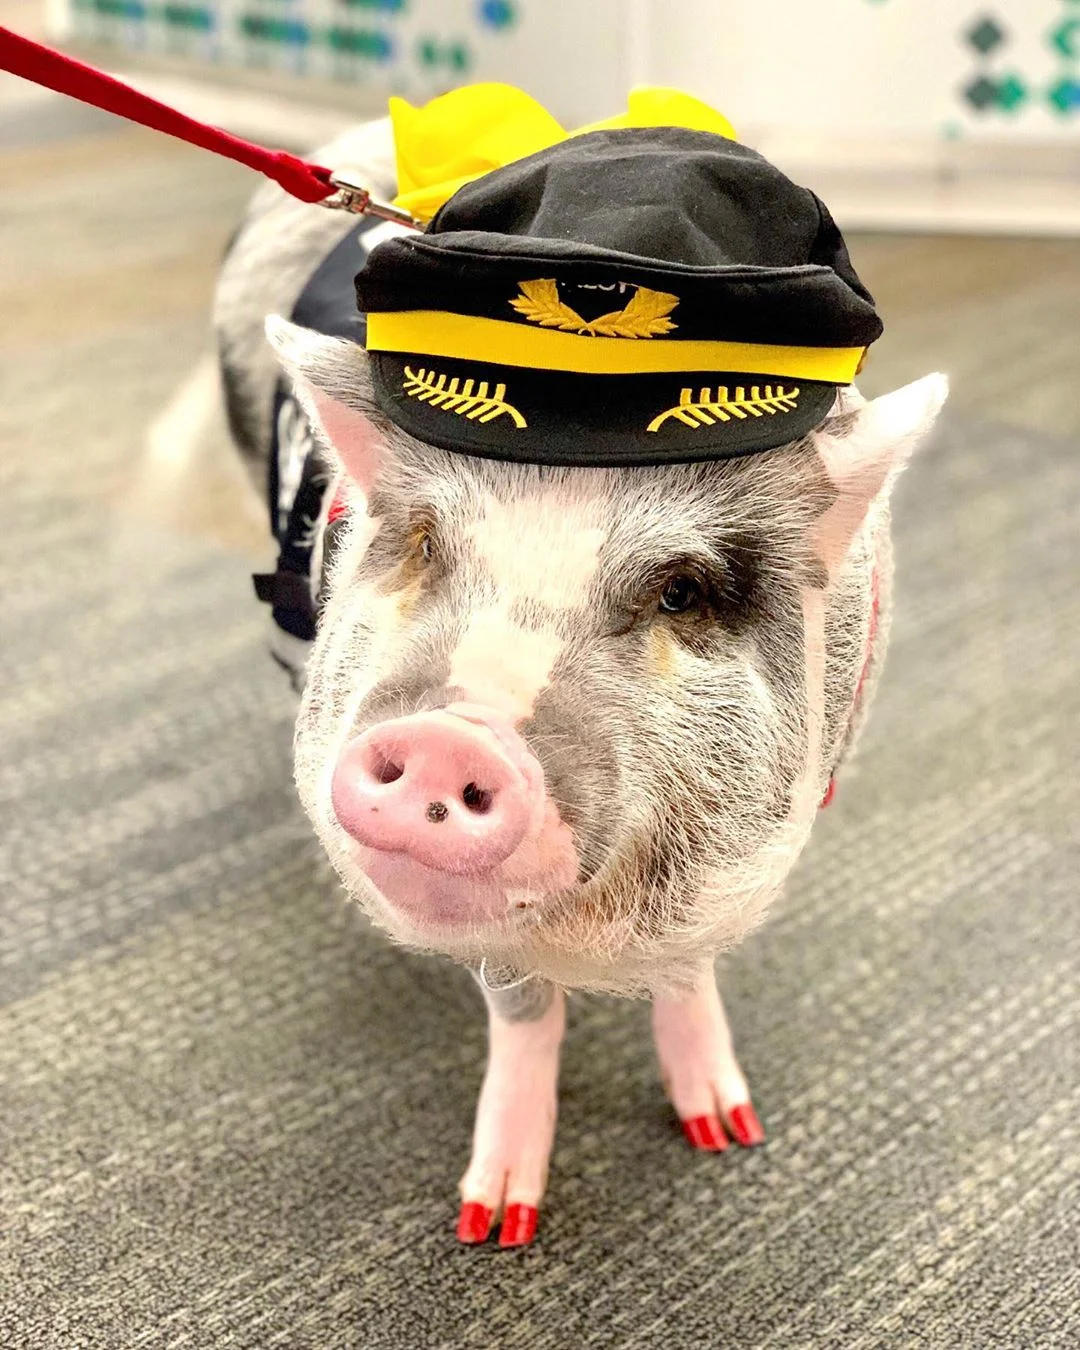 В аеропорту Сан-Франциско тепер працює свиня, яка миттєво стала зіркою - фото 458332